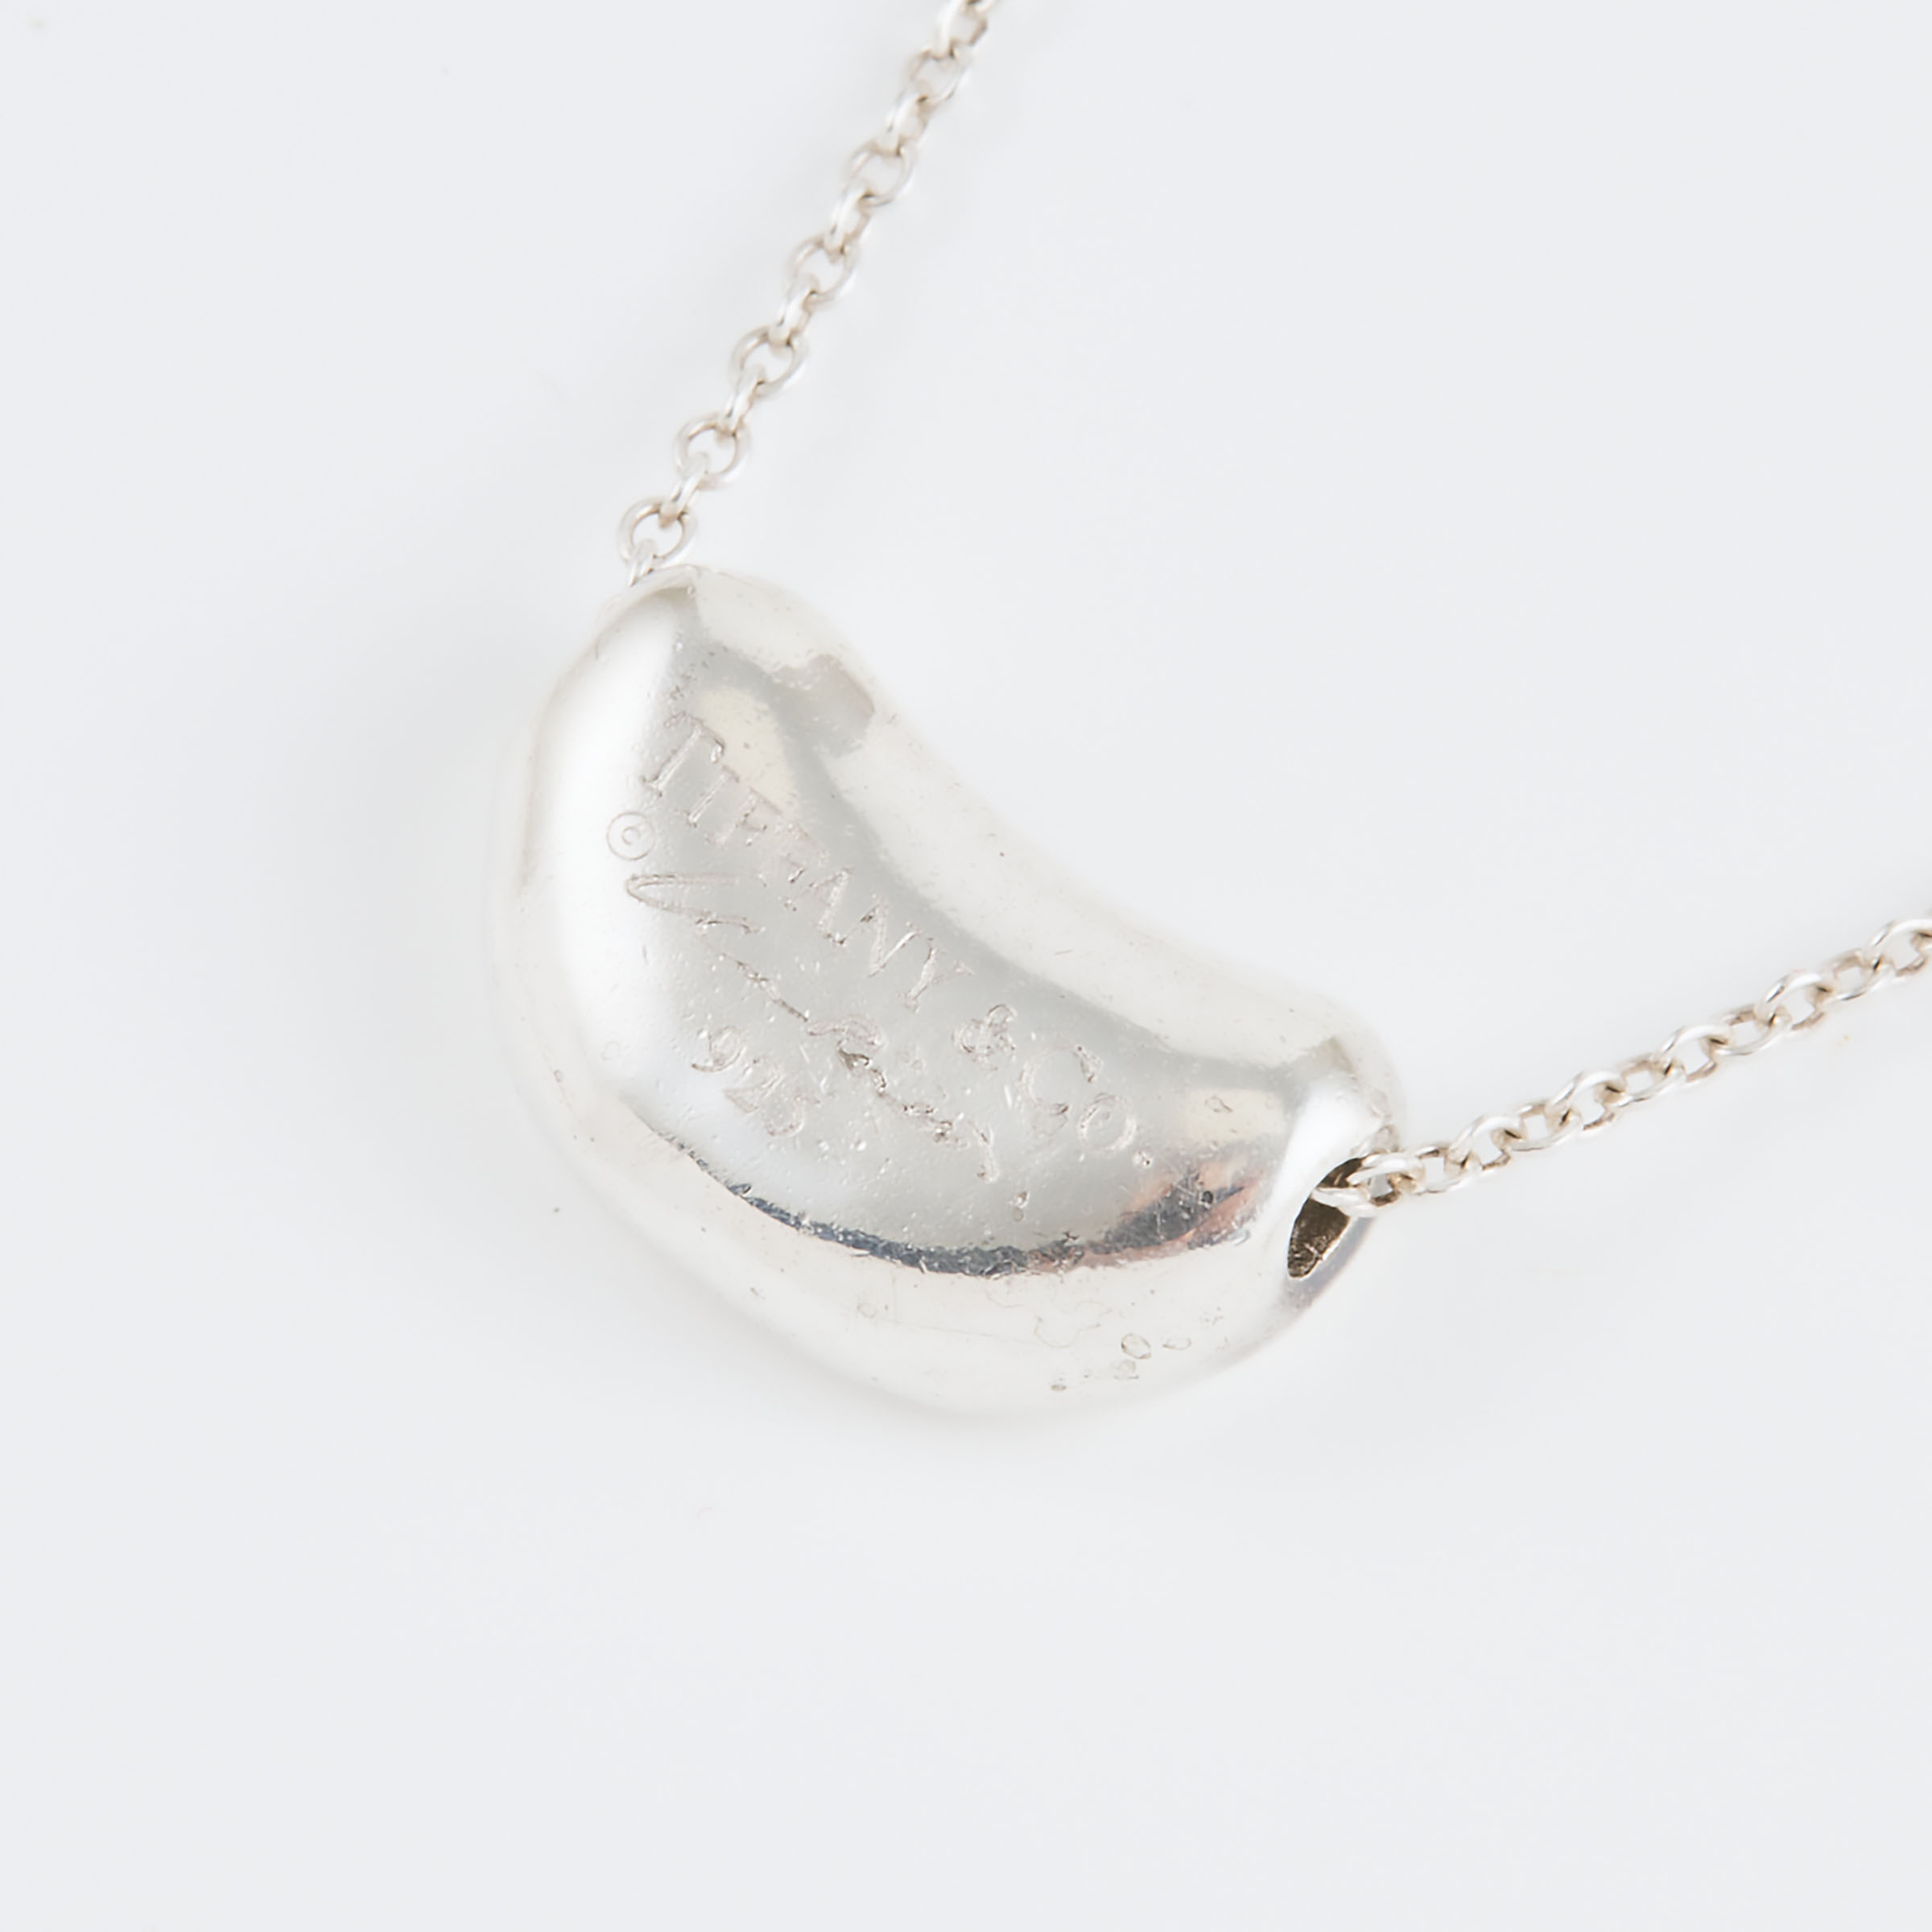 Tiffany & Co. Elsa Peretti Sterling Silver 'Bean' Pendant And Chain